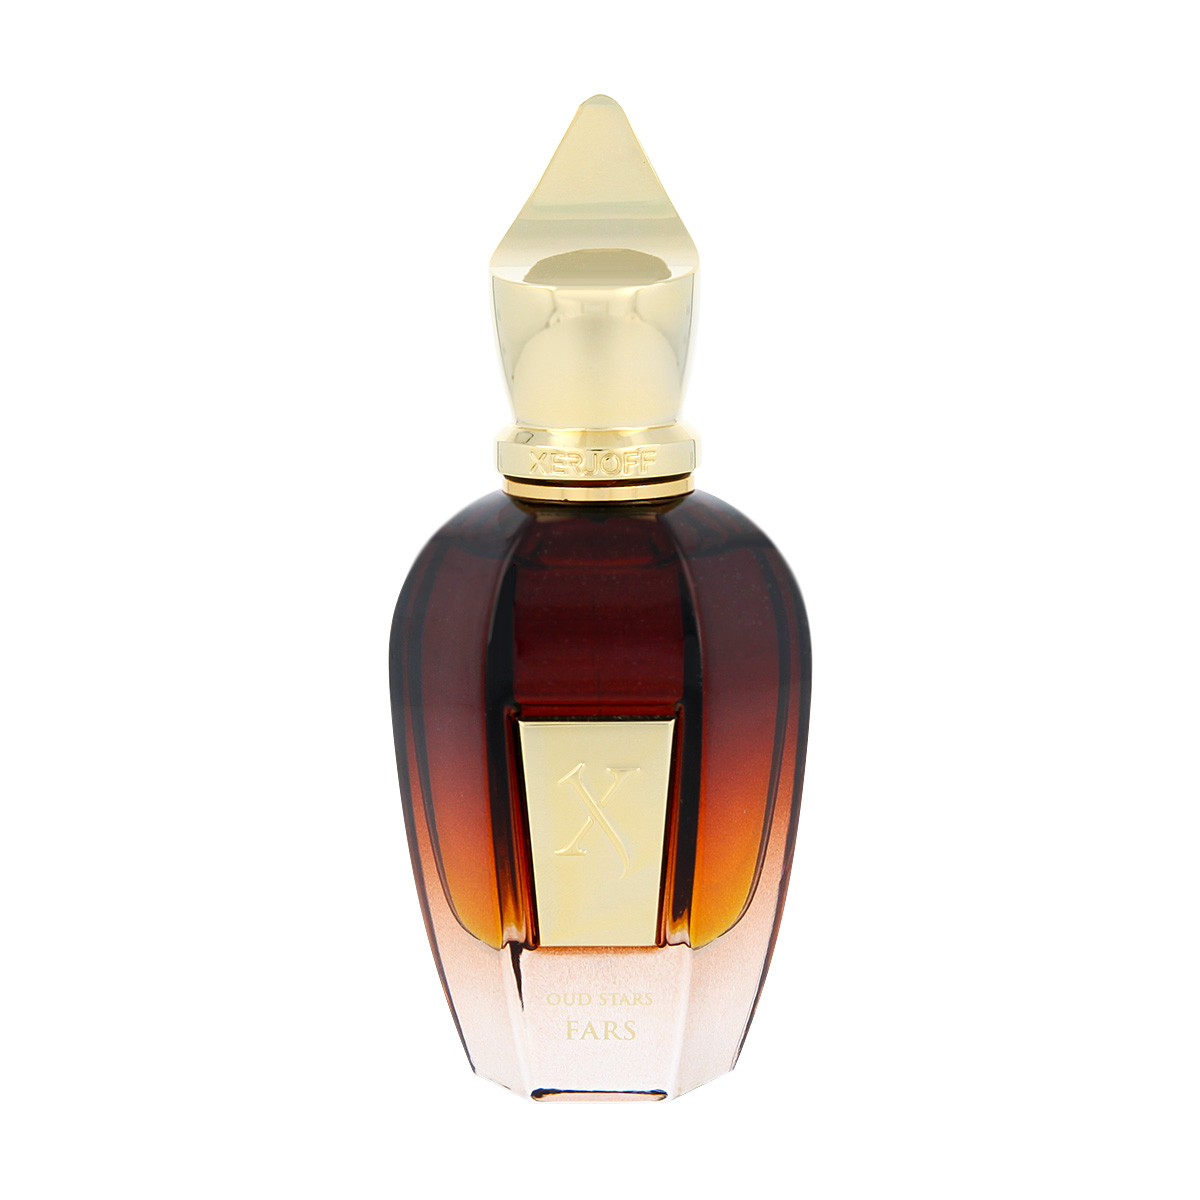 Xerjoff Oud Stars Fars 5 ml NIŠINIAI kvepalų mėginukas (atomaizeris) Unisex Parfum